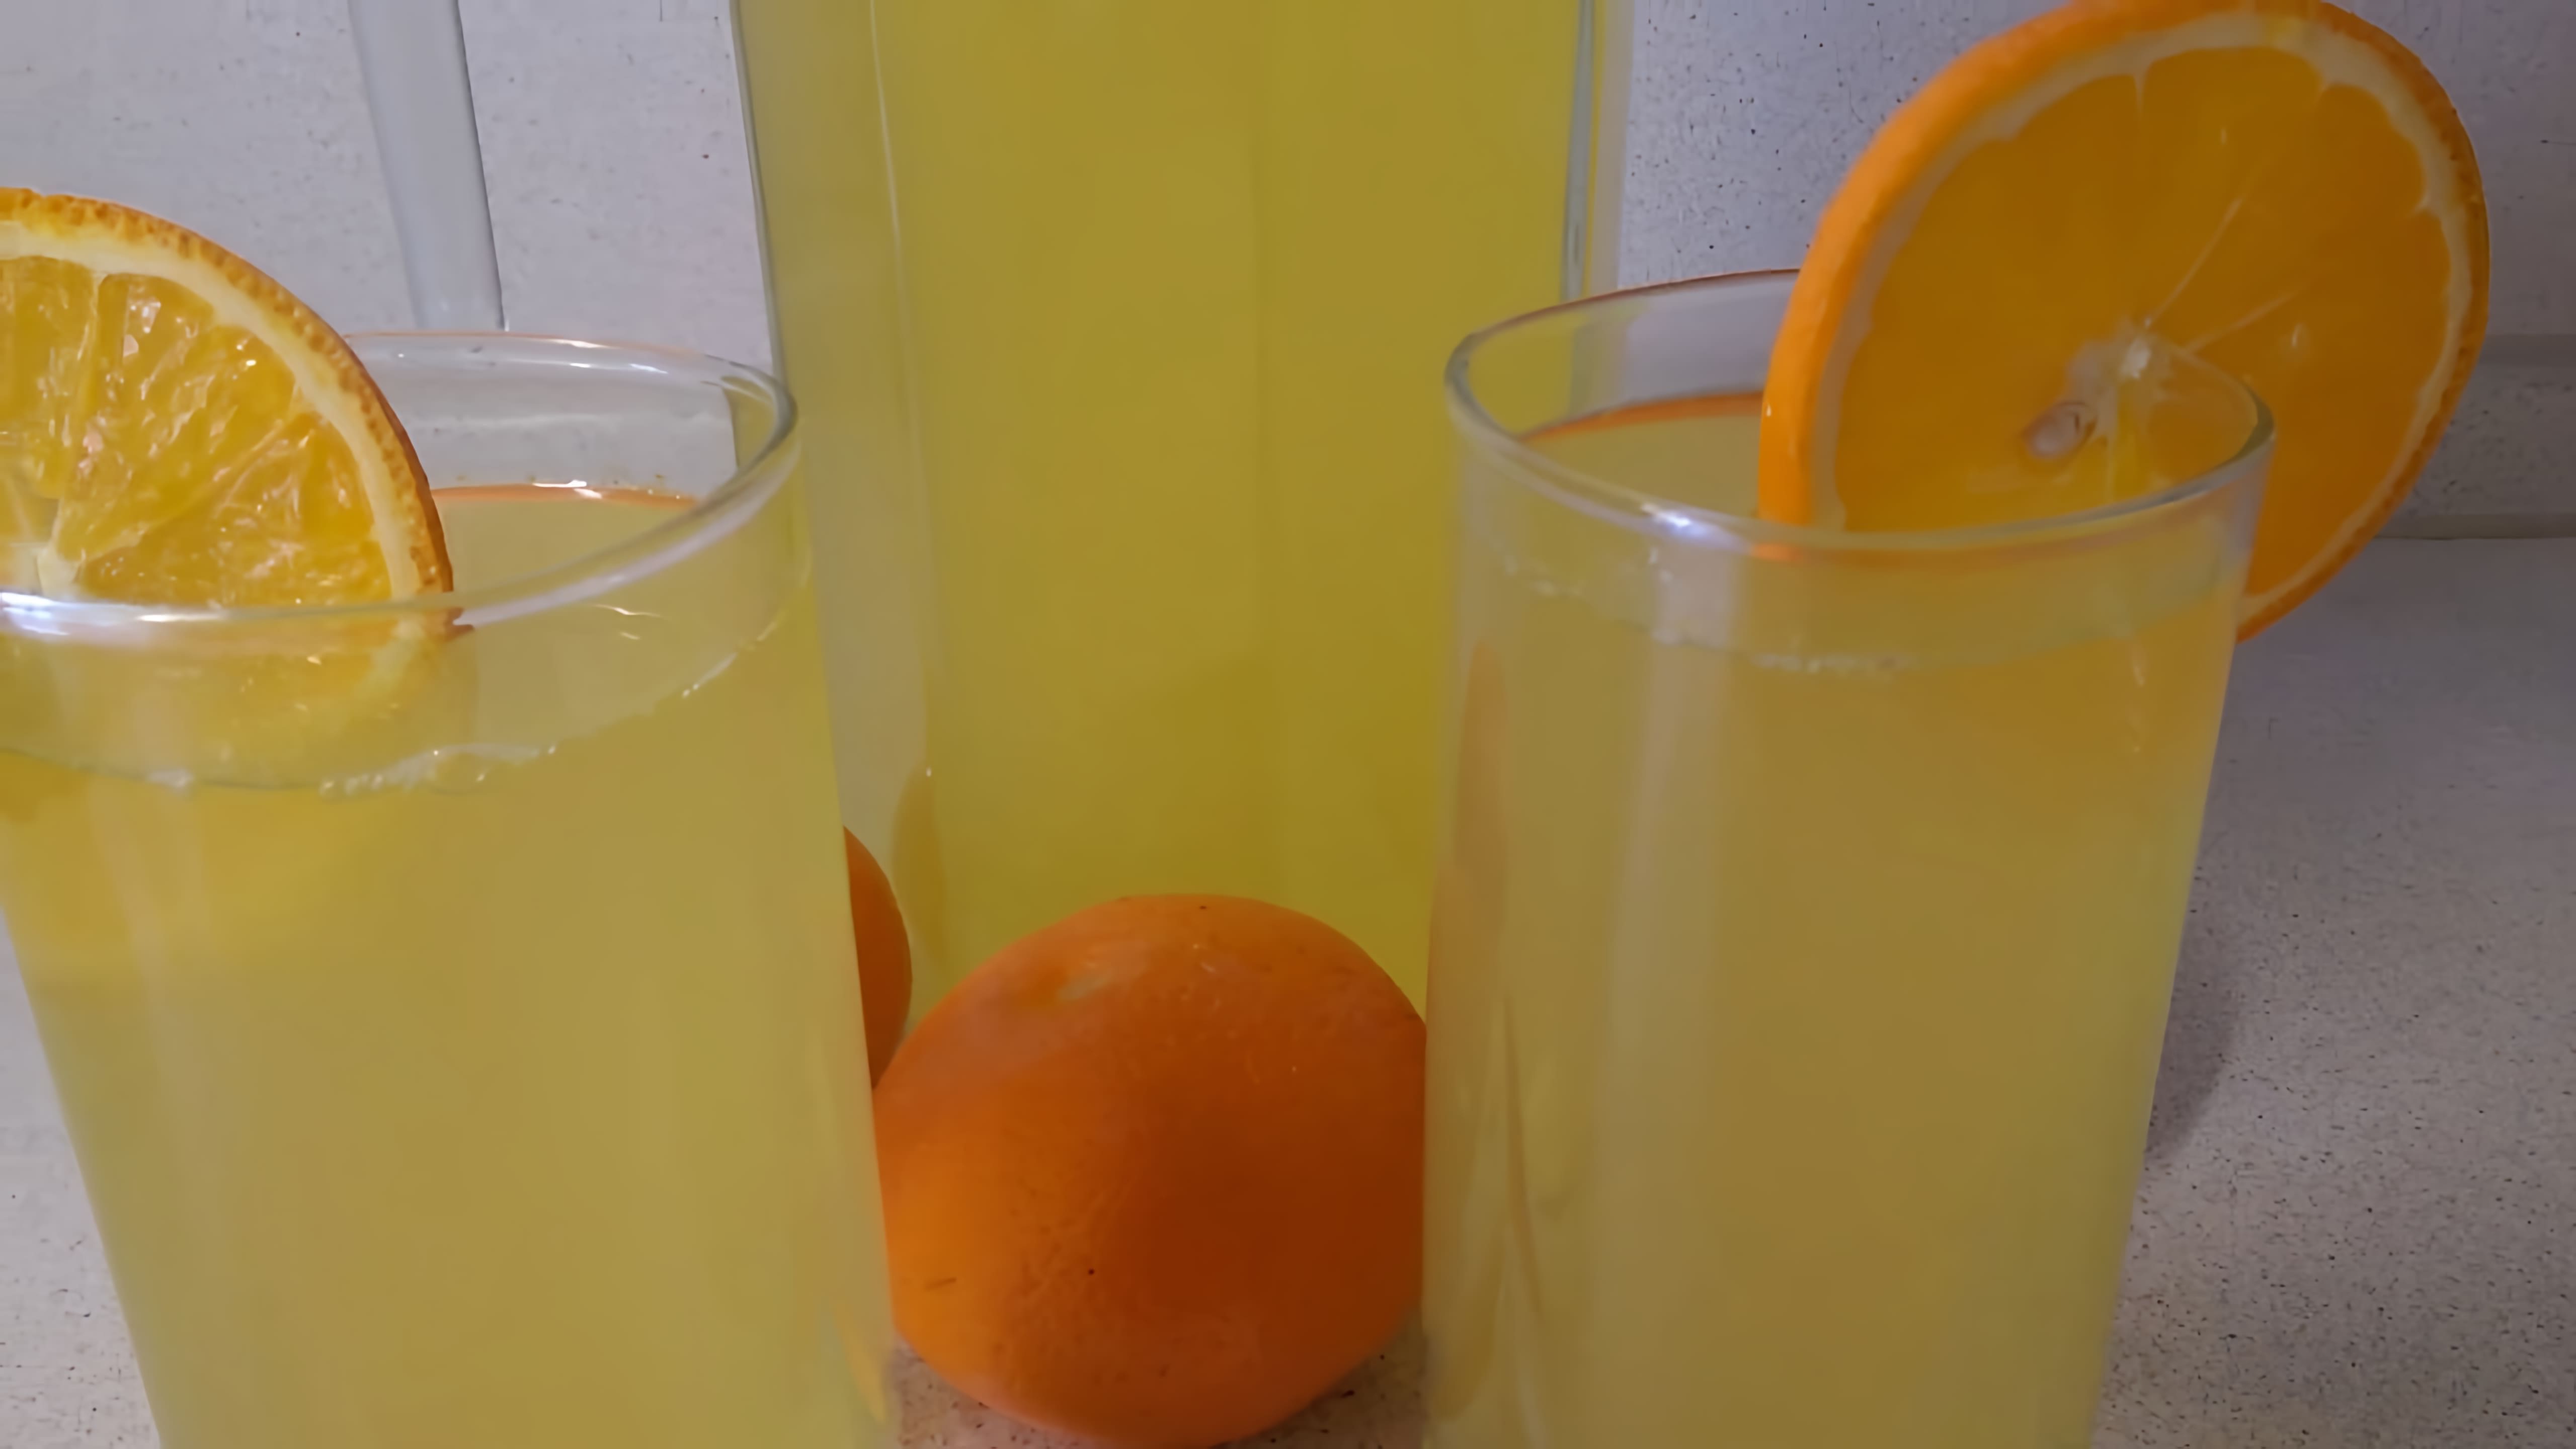 В этом видео демонстрируется процесс приготовления лимонада из 2 апельсинов и 1 лимона